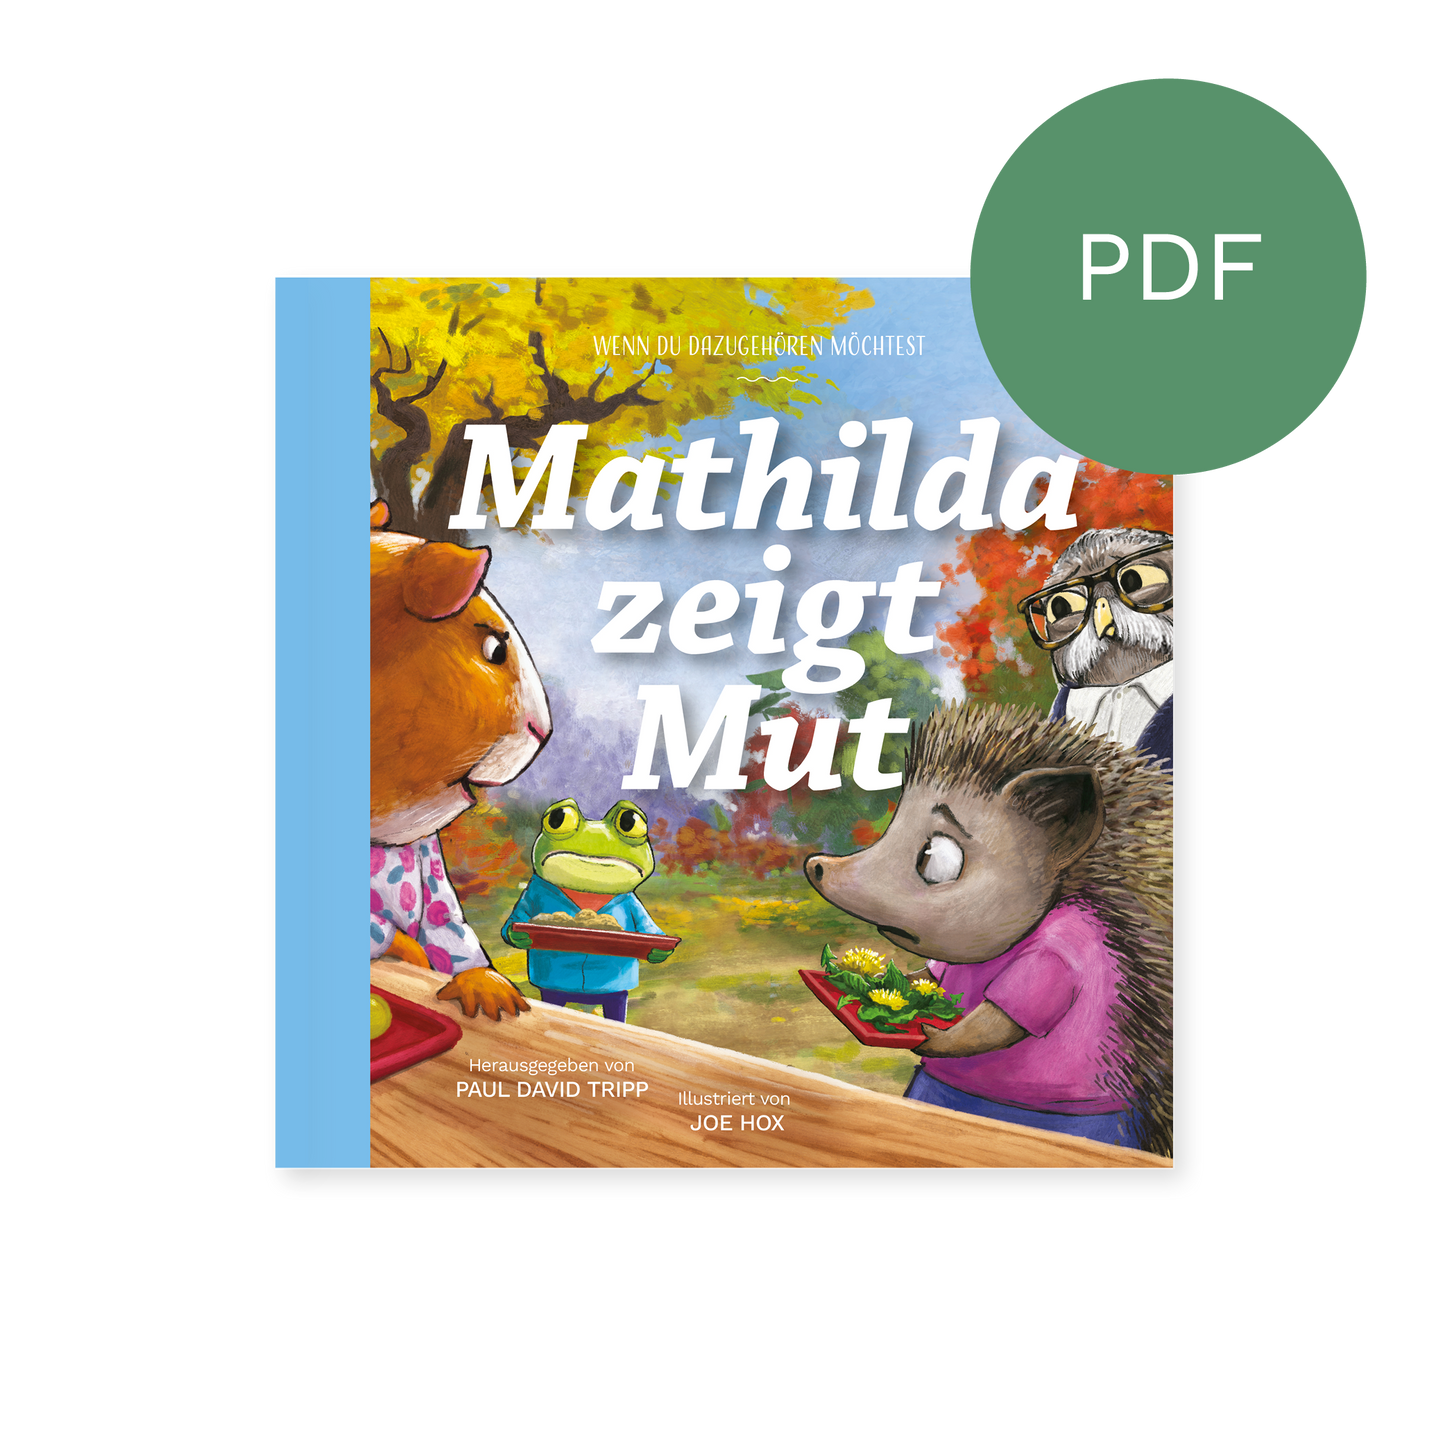 PDF – Mathilda zeigt Mut: Wenn du dazugehören möchtest